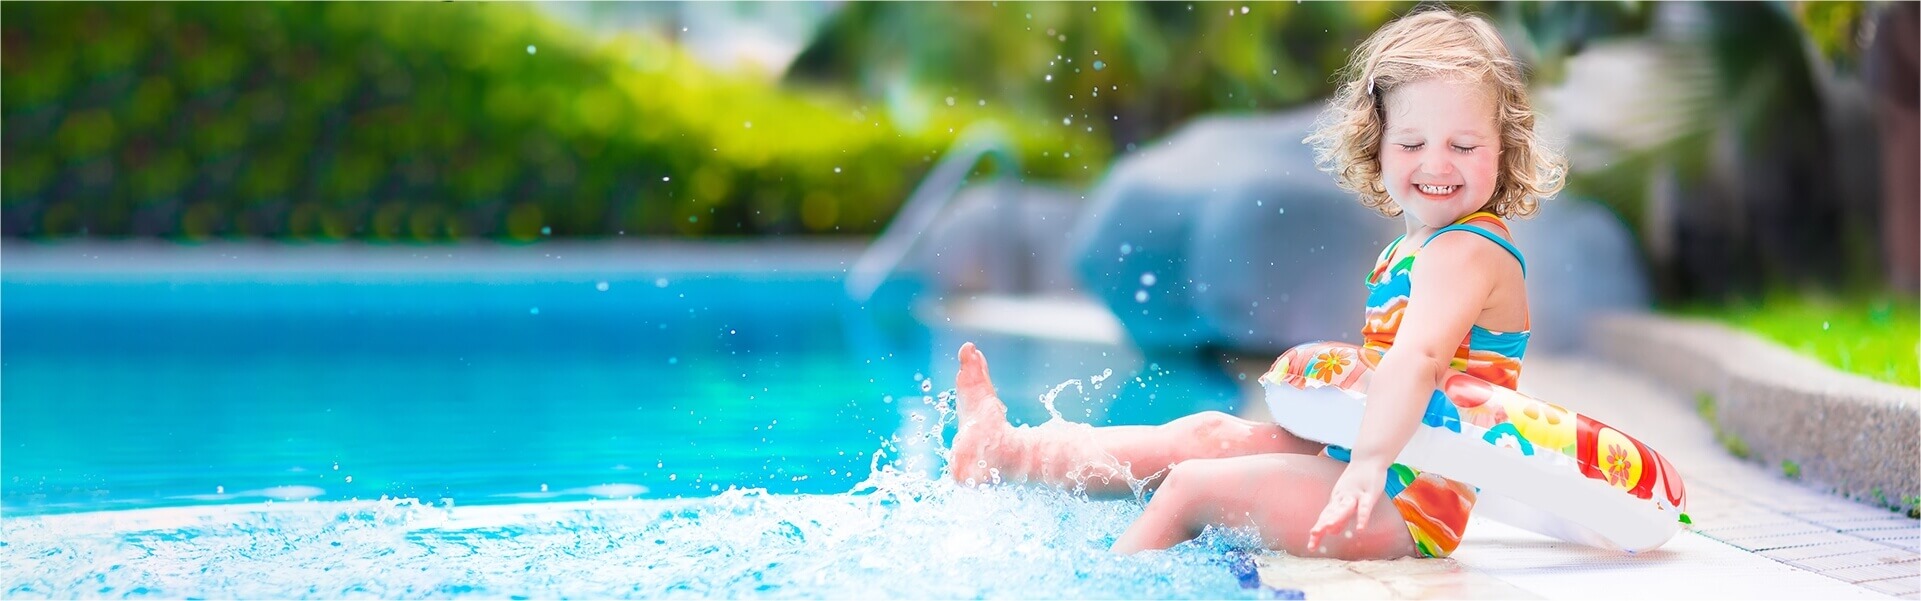 Child splashing in a pool